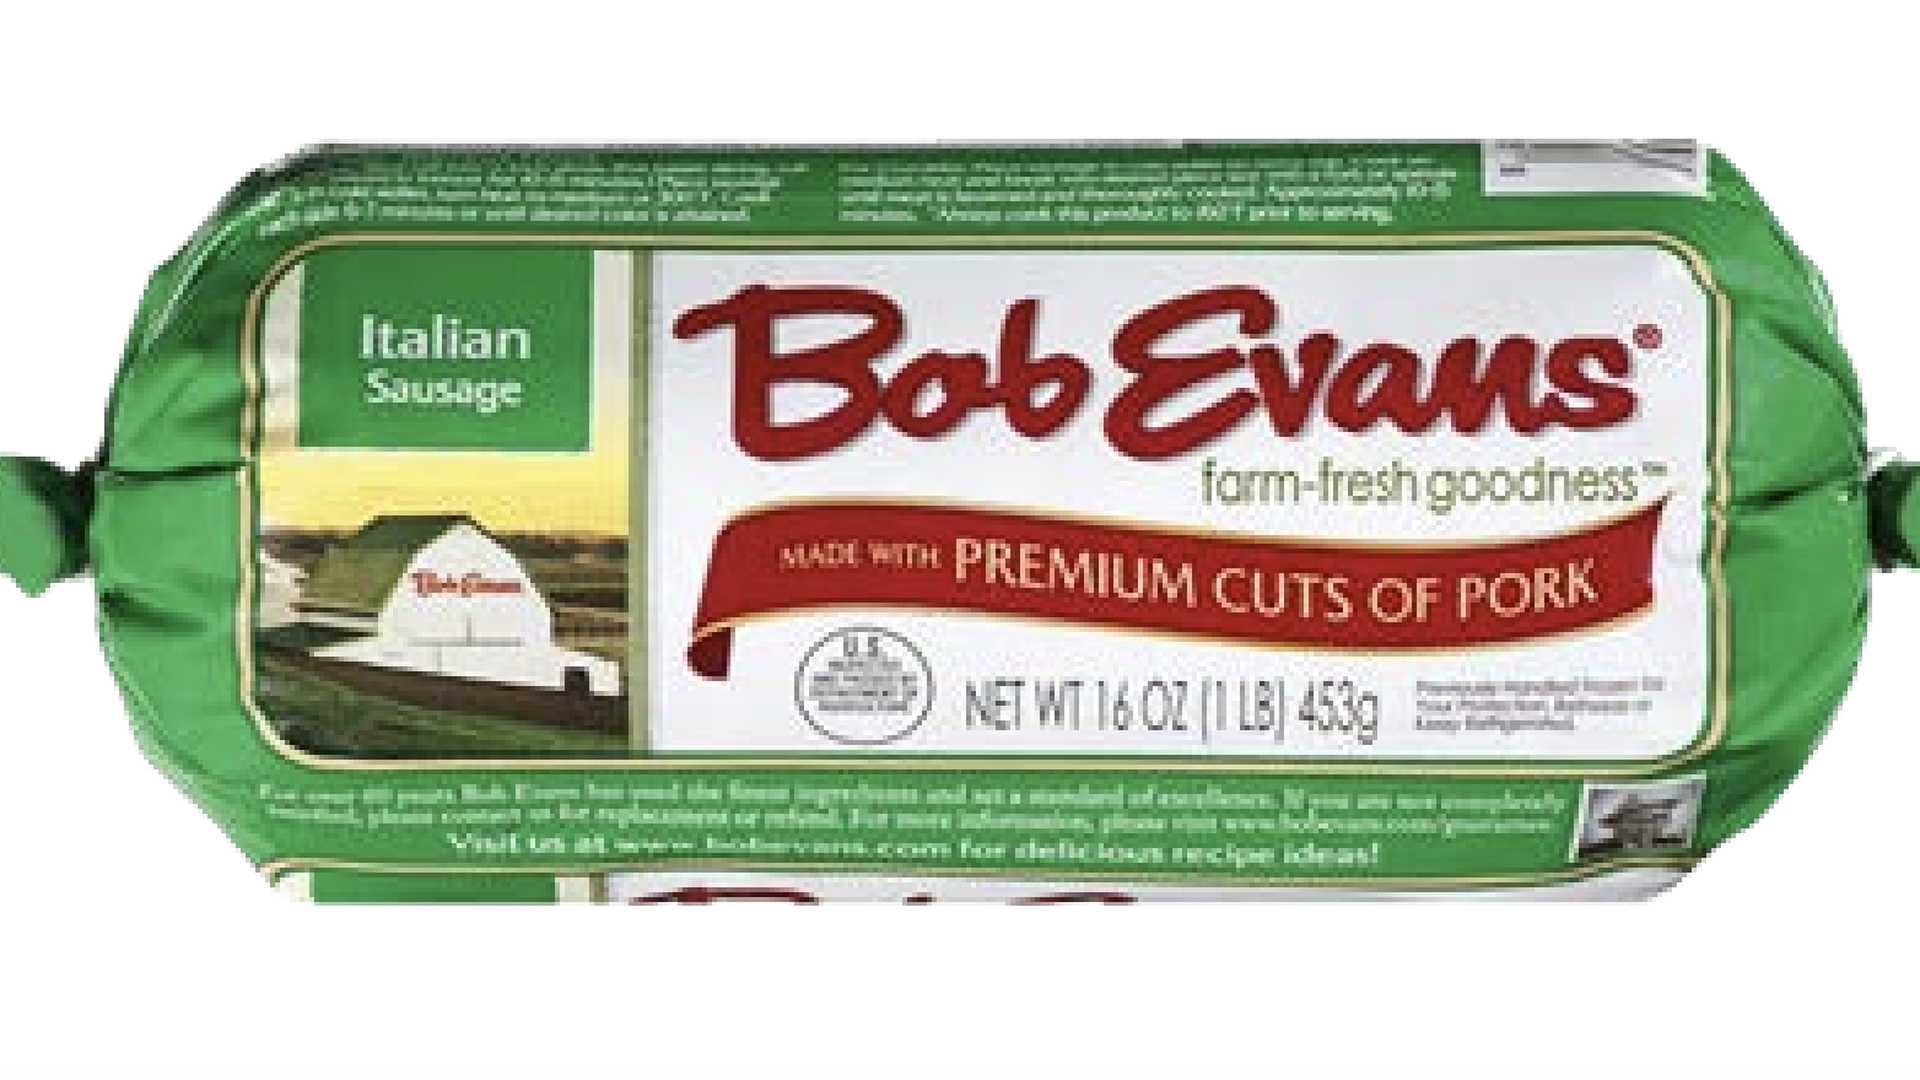 Bob Evans pork package